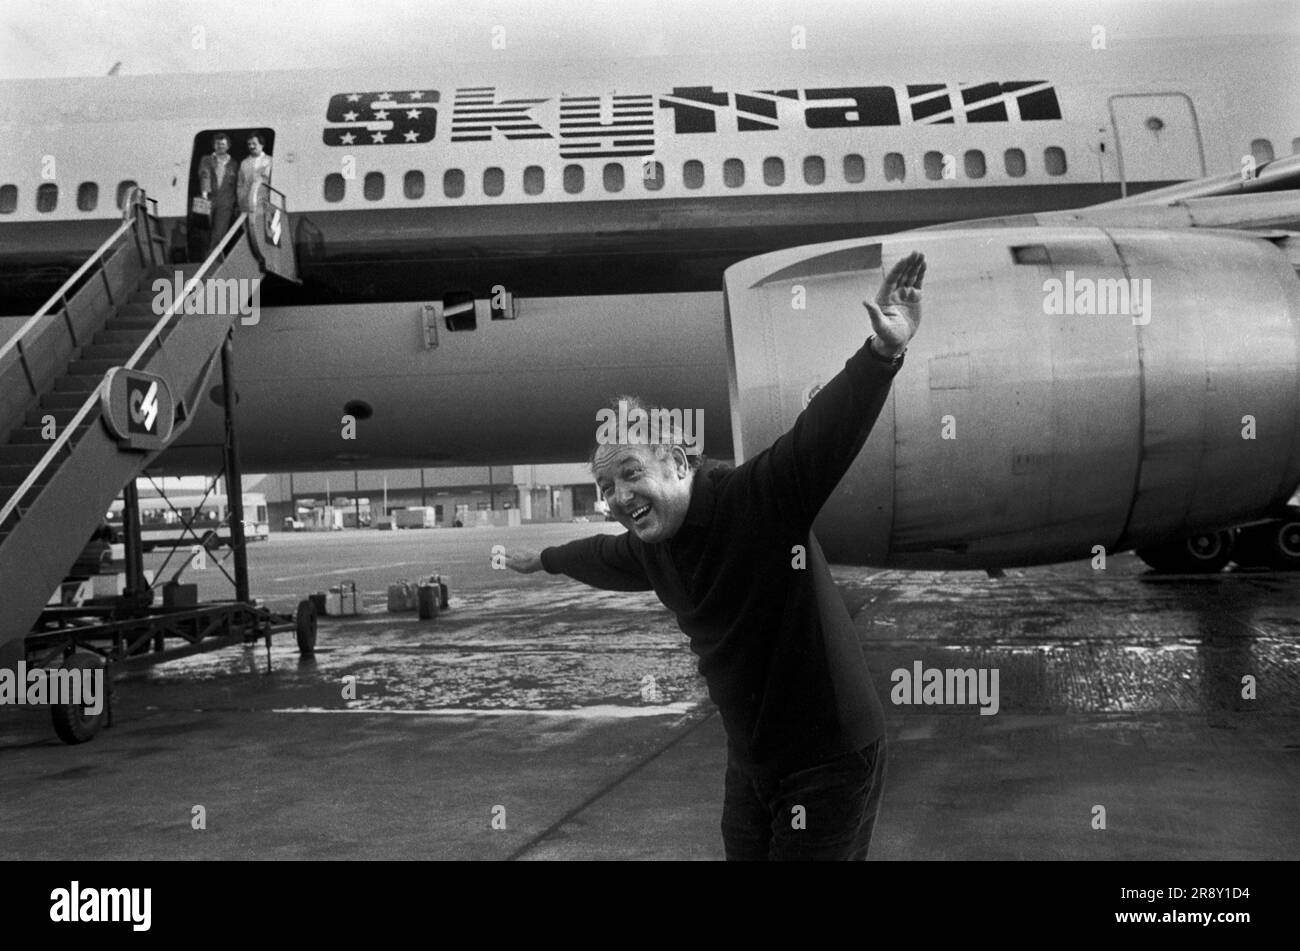 Freddie Laker ha lanciato Skytrain, il volo inaugurale ha avuto luogo il 26 settembre 1977. Questo era un servizio giornaliero senza fronzoli, economico e conveniente tra Londra Gatwick e JFK a New York. Freddie Laker incontra la stampa; la sua posa normale per i fotografi era con le braccia tese fingendo di essere uno dei suoi aerei. Foto Stock